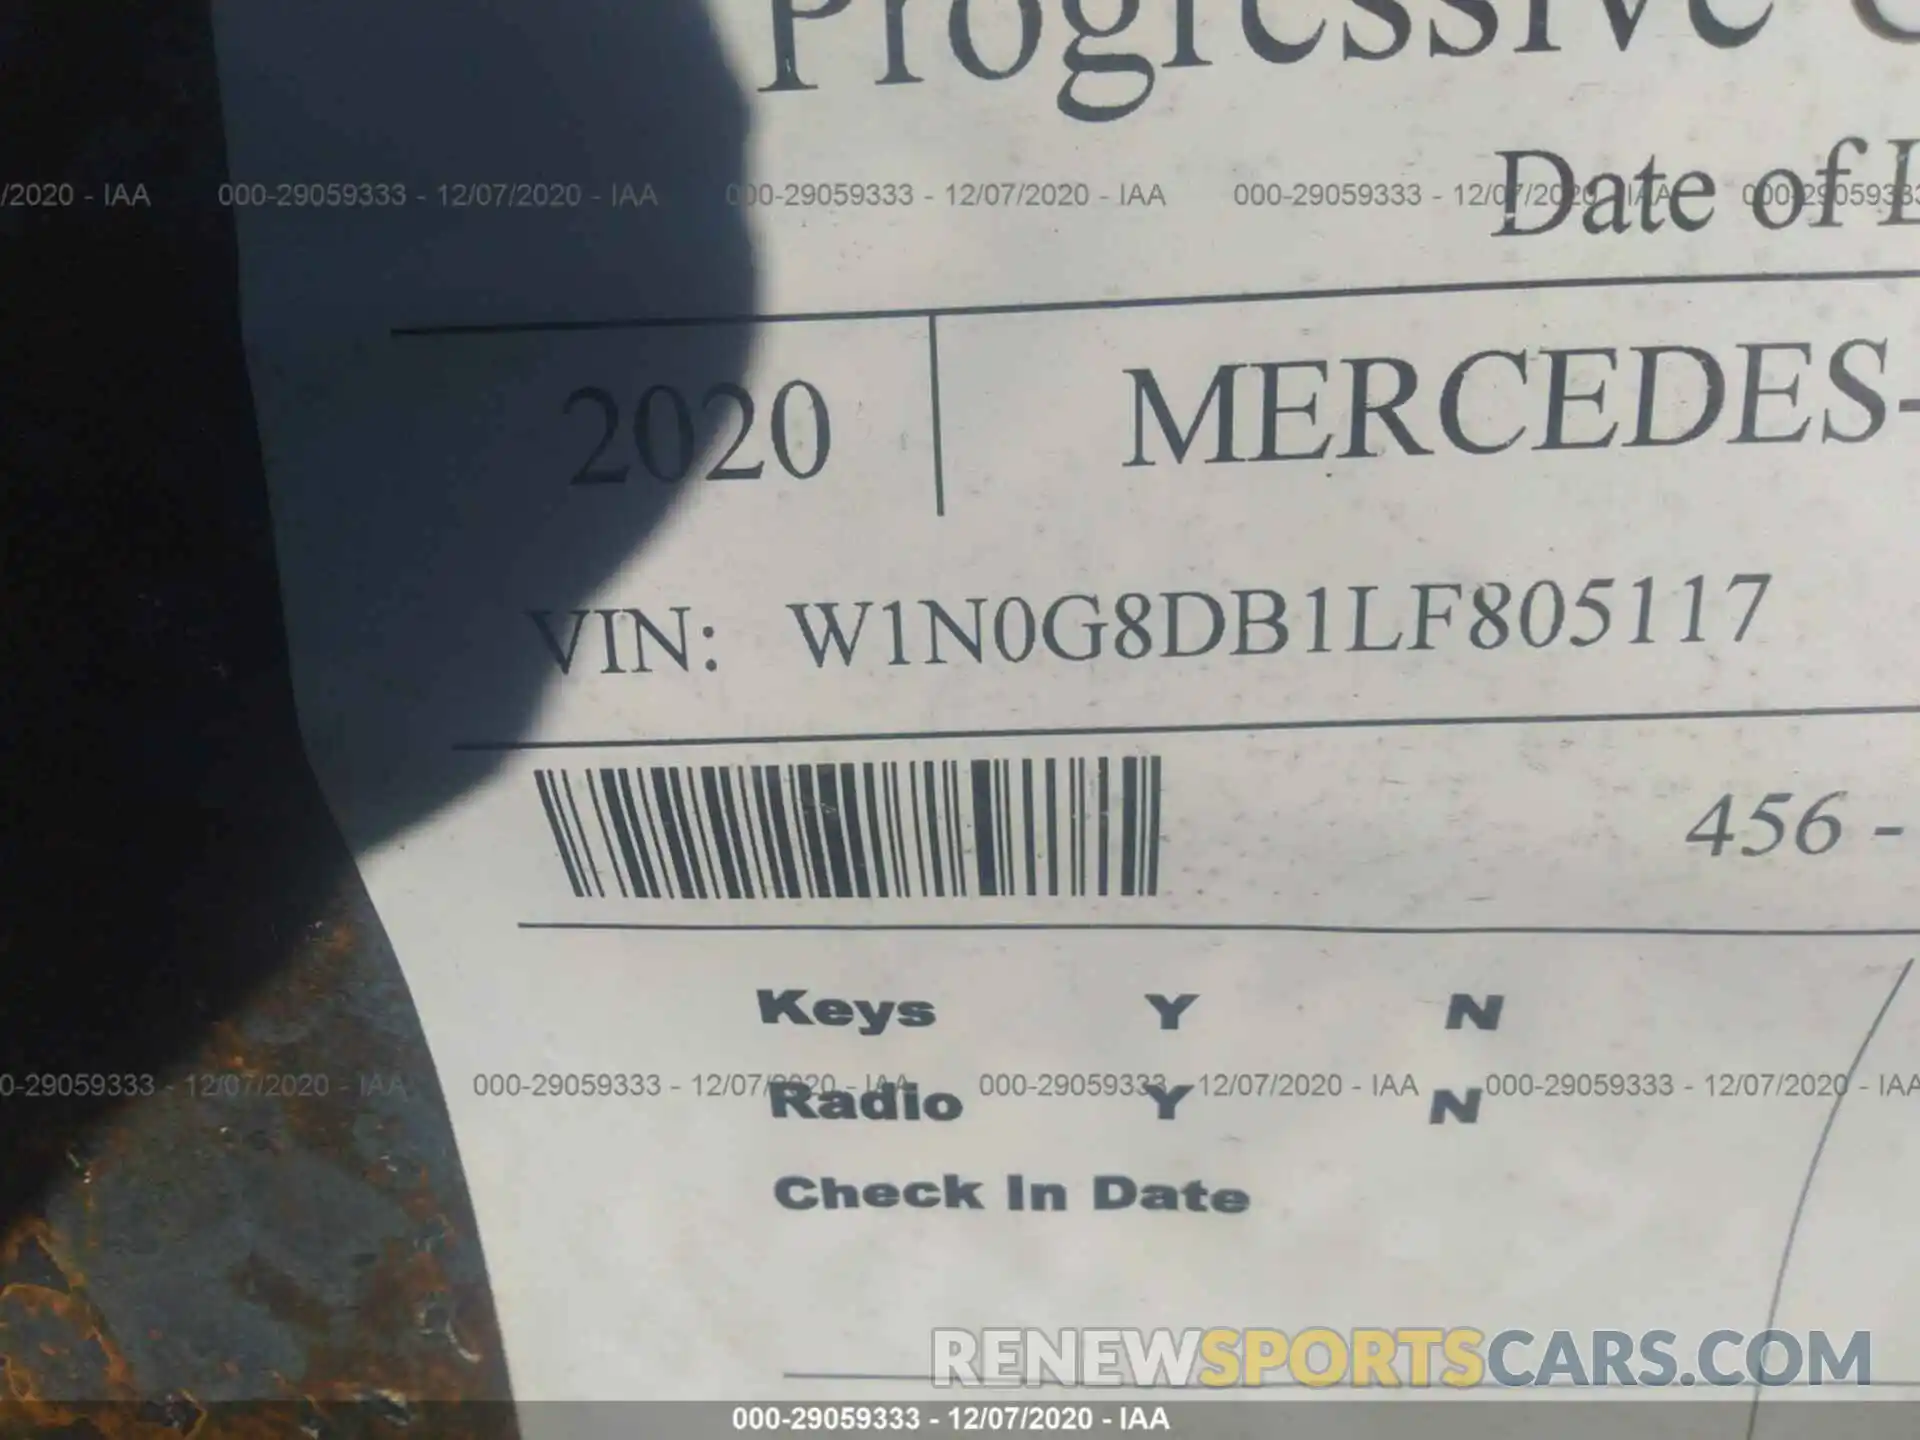 9 Photograph of a damaged car W1N0G8DB1LF805117 MERCEDES-BENZ GLC 2020